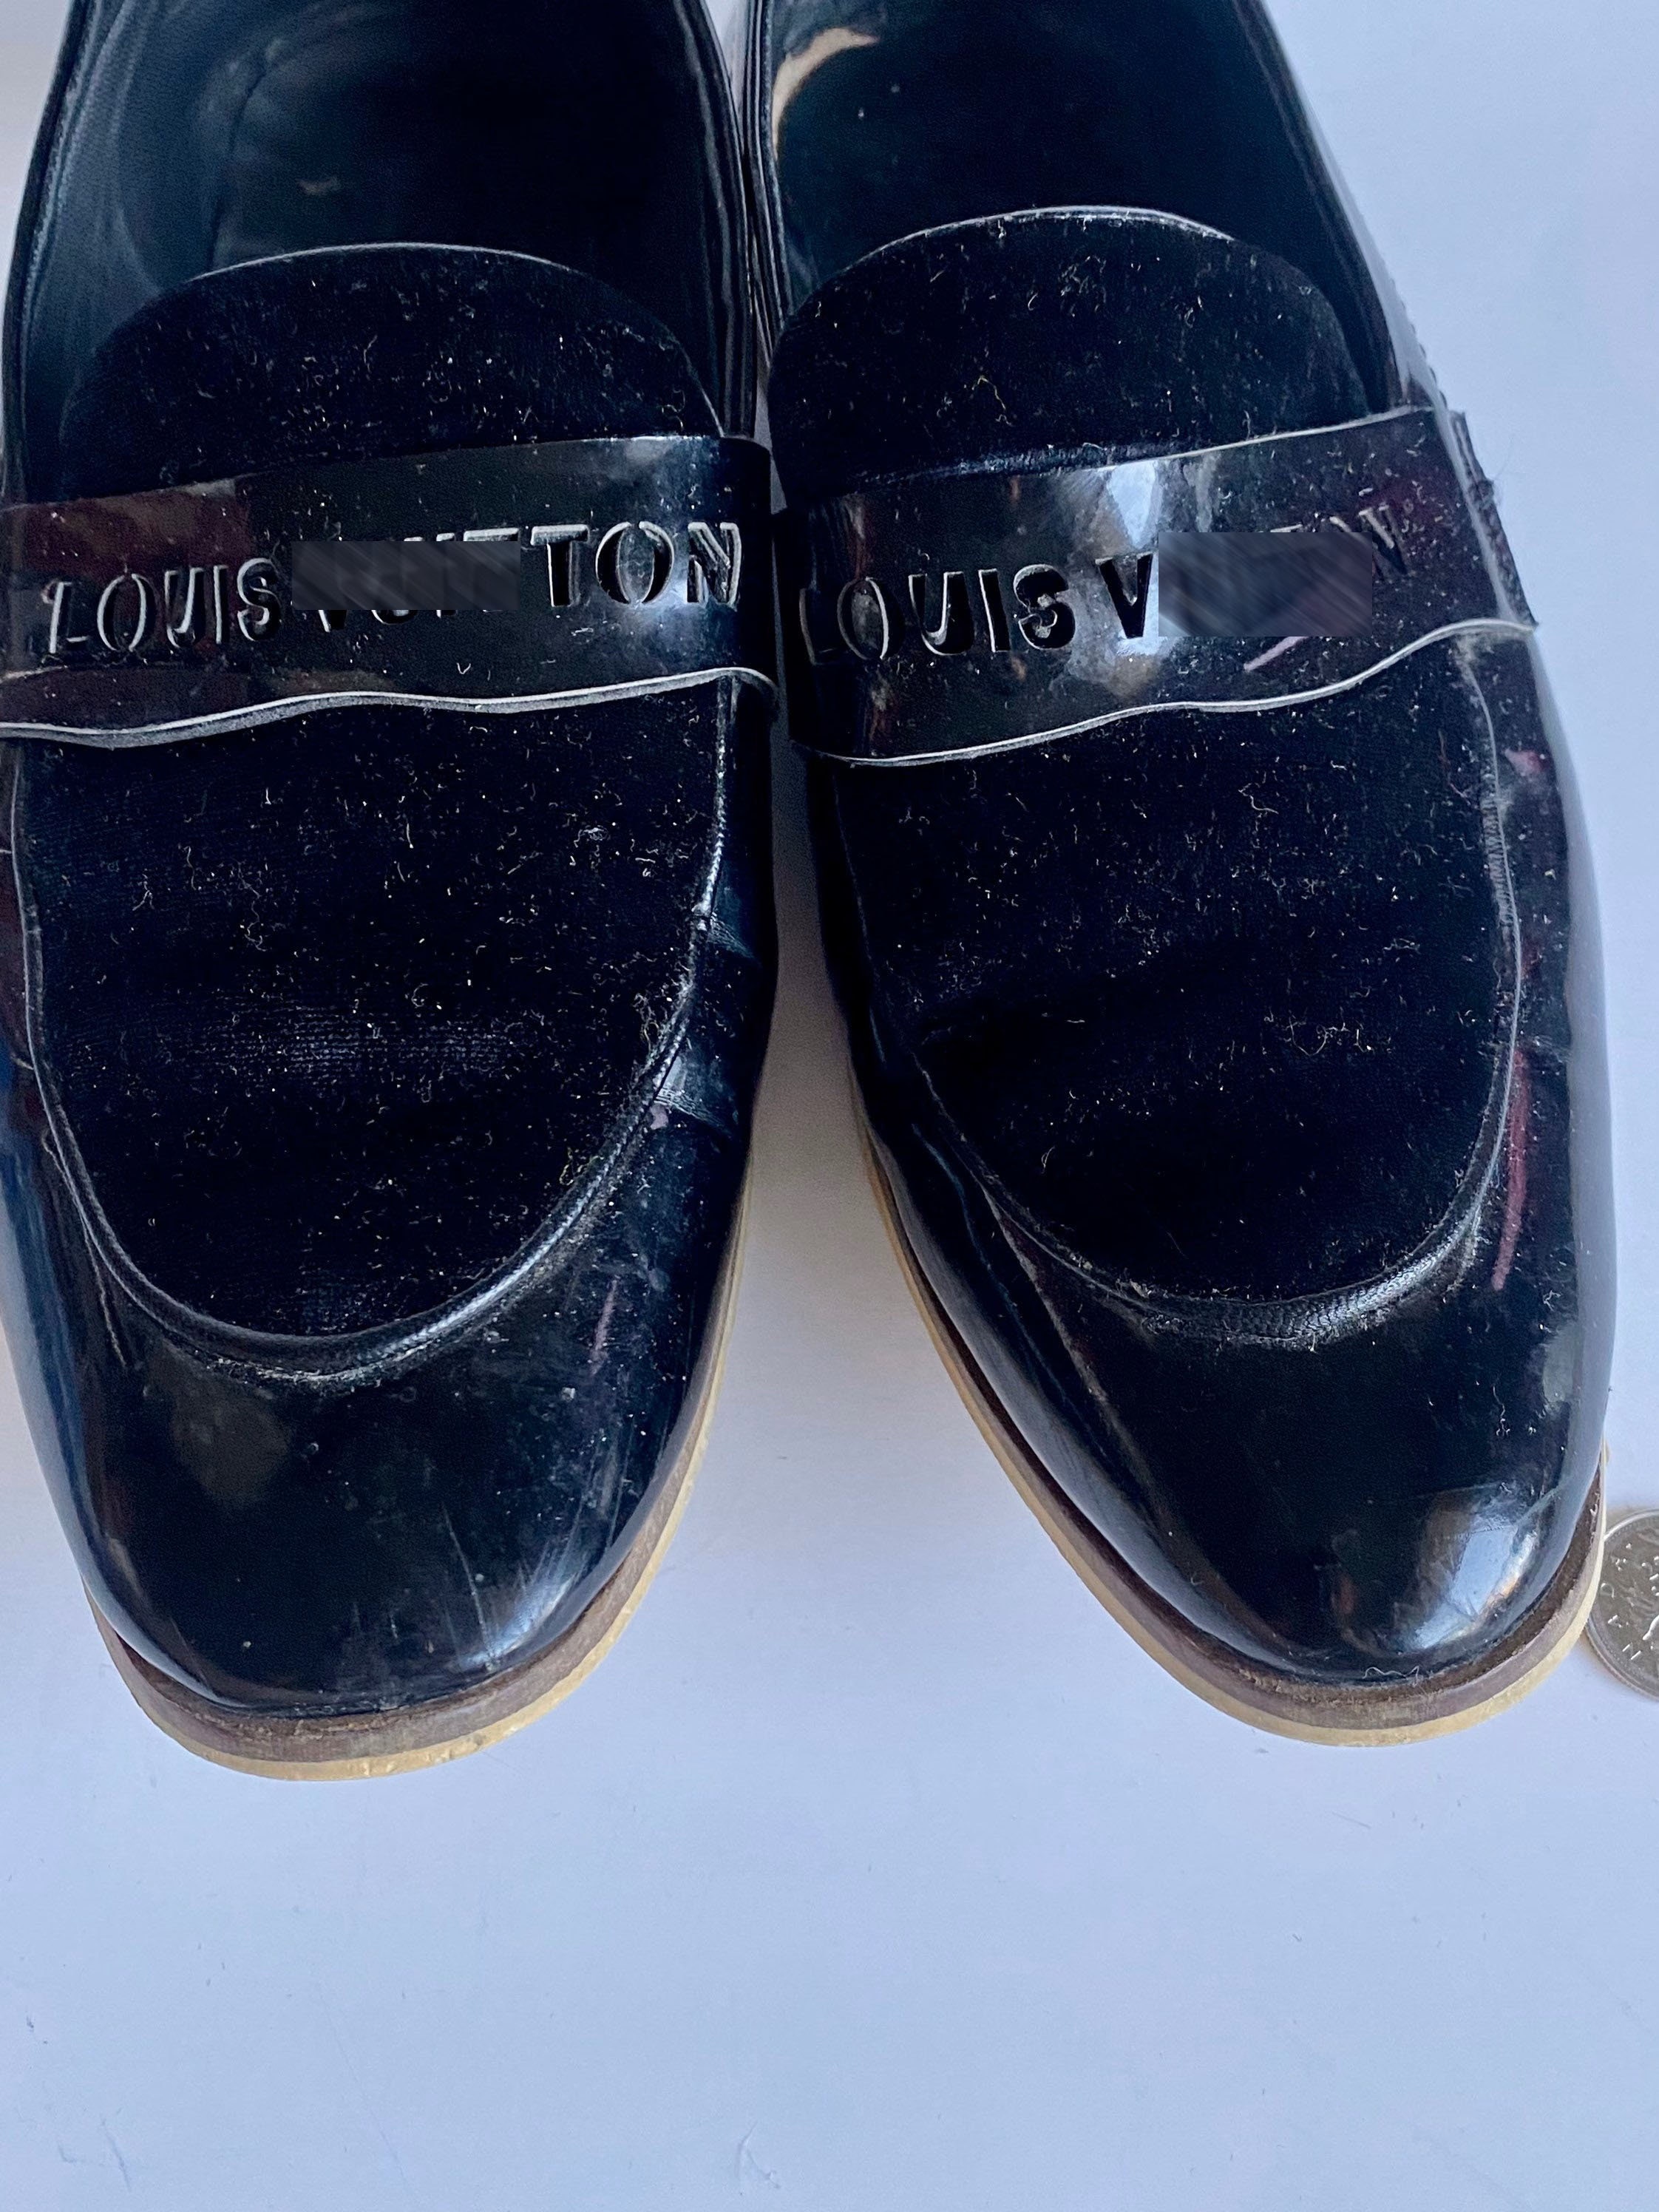 900+ Best Louis Vuitton - Men's Shoes & Stuff ideas